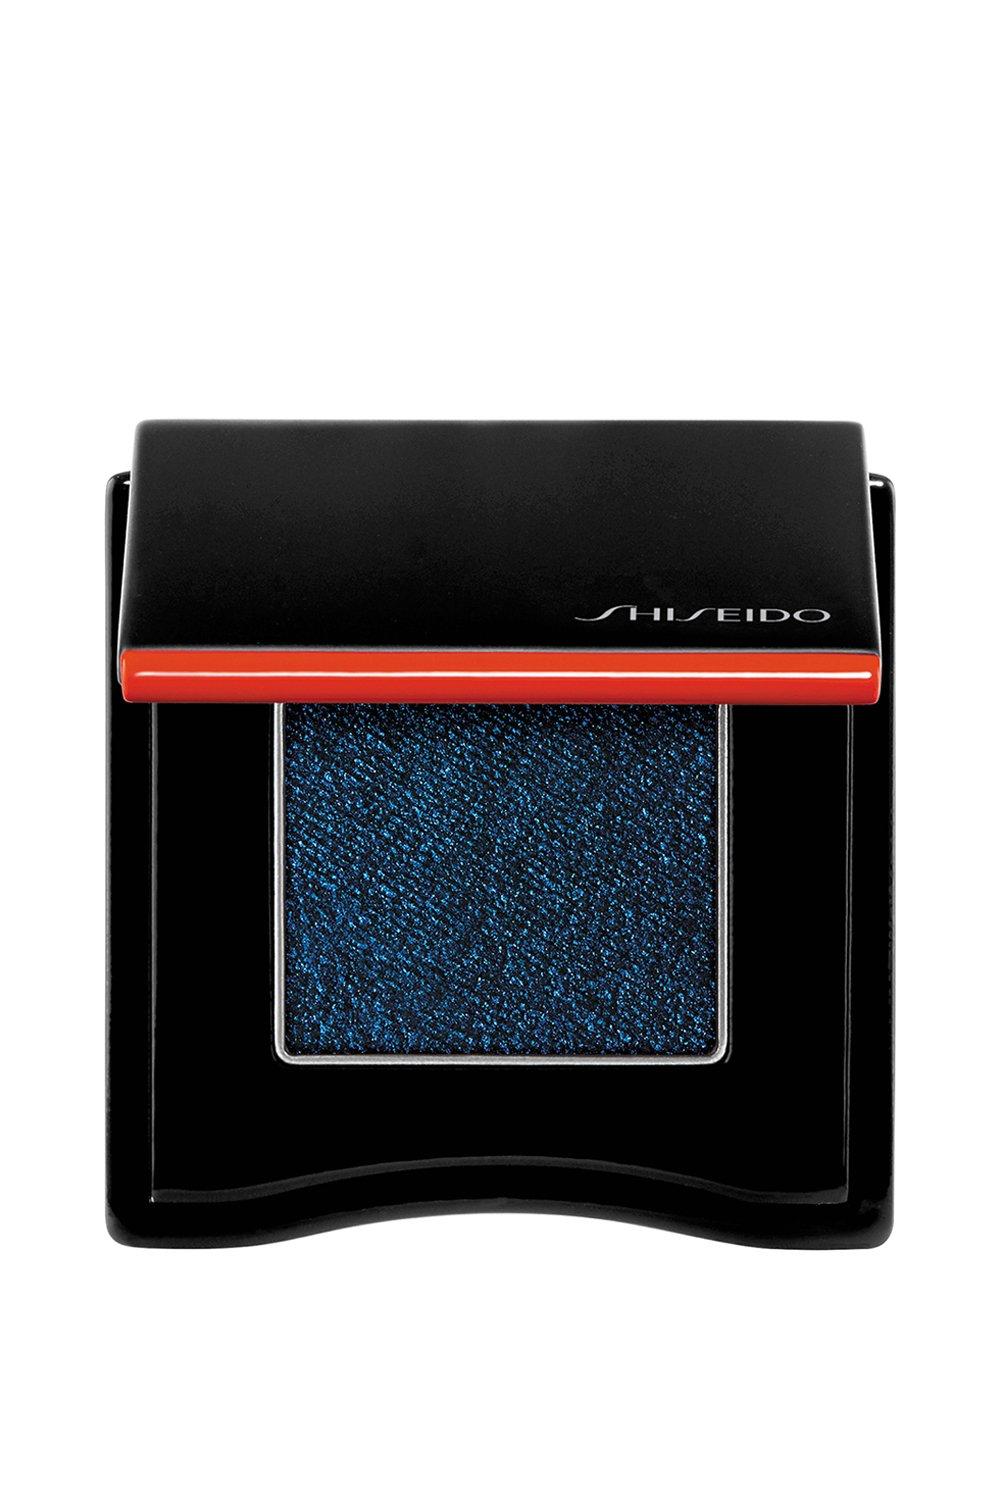 Shiseido POP PowderGel Eye Shadow